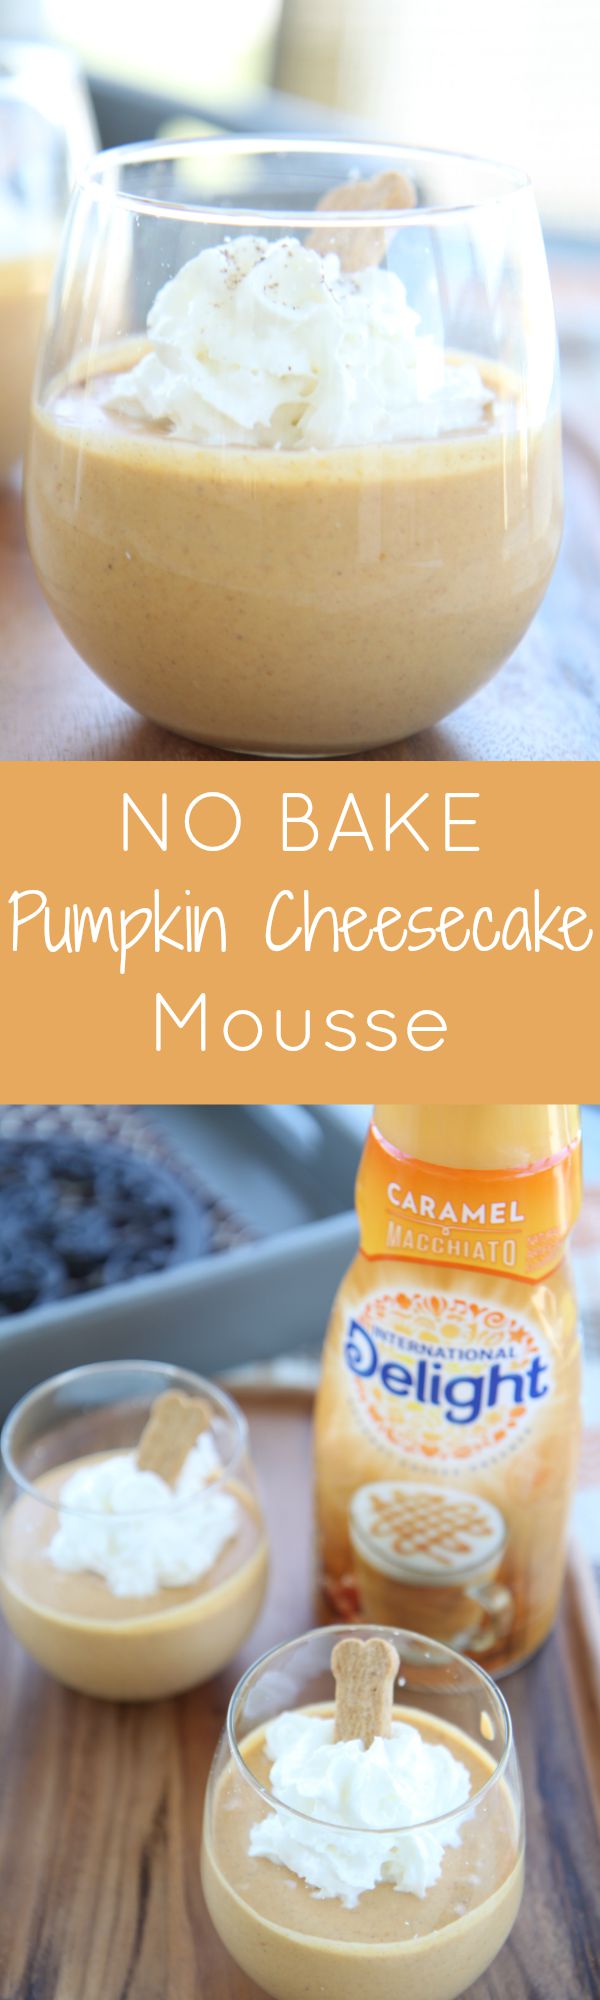 No Bake Pumpkin Dessert Recipe